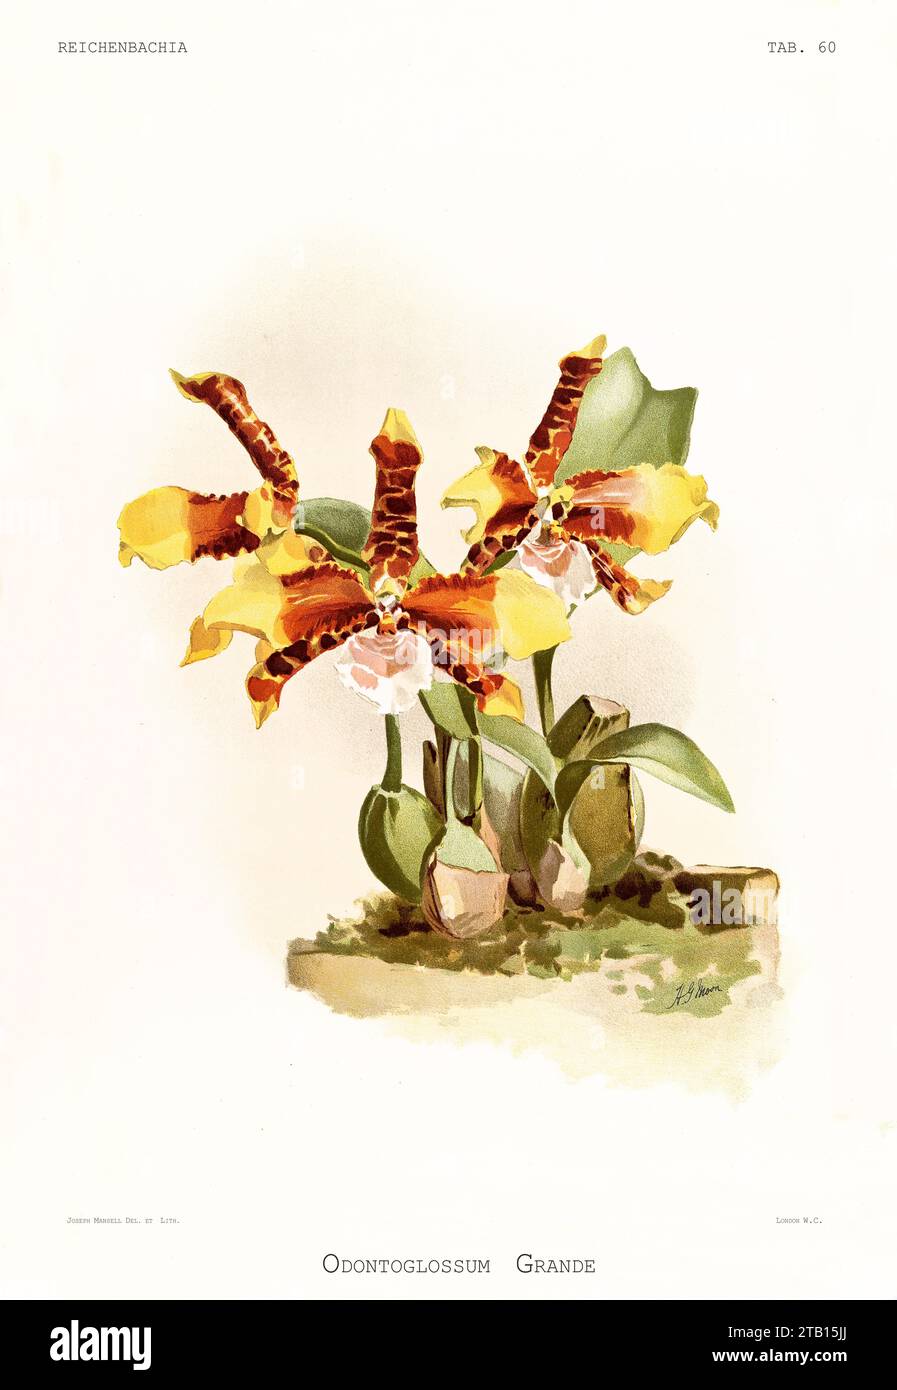 Vieille illustration de Tiger Orchid (Rossioglossum grande). Reichenbachia, de F. Sander. St. Albans, Royaume-Uni, 1888 - 1894 Banque D'Images